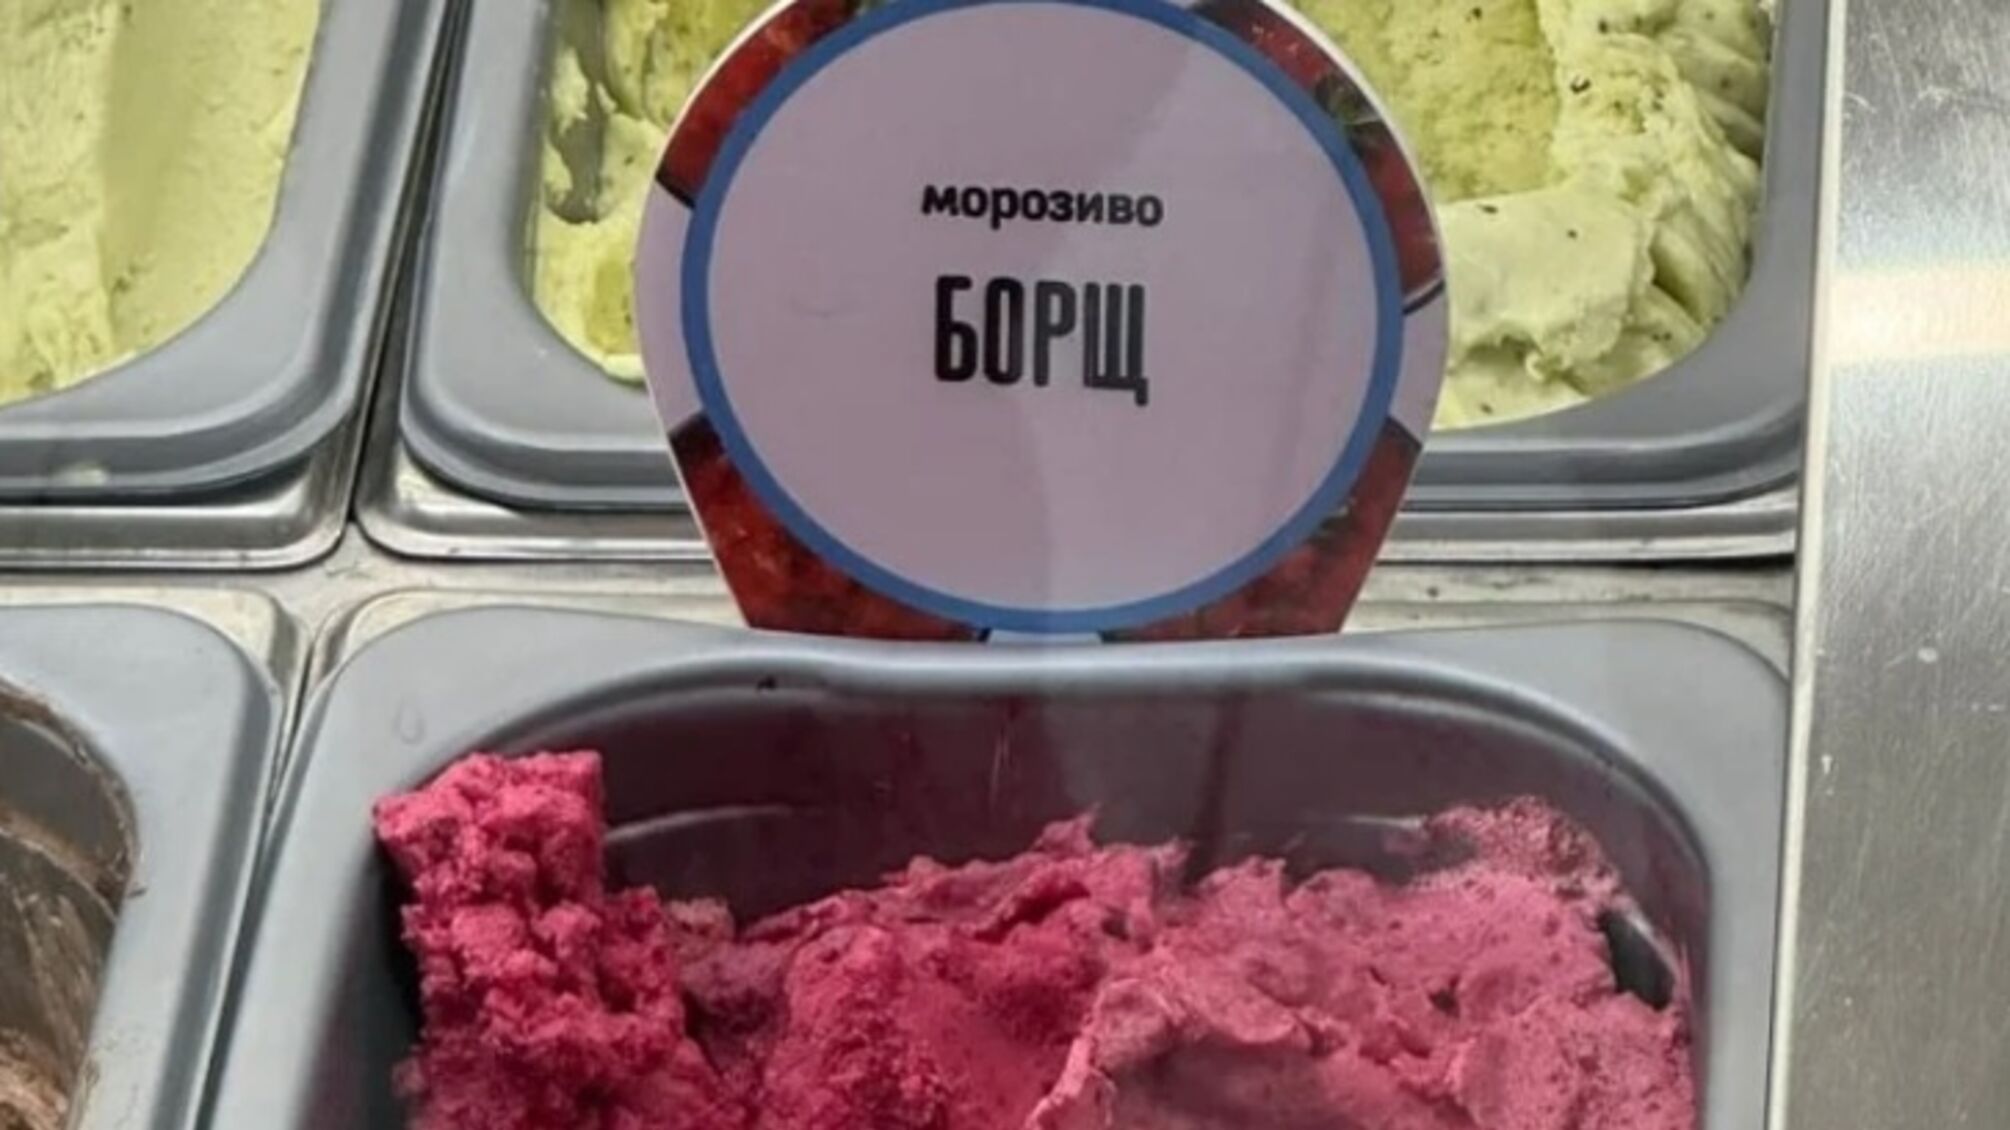 Мороженое со вкусом борща – вкусовая революция от украинских благотворителей